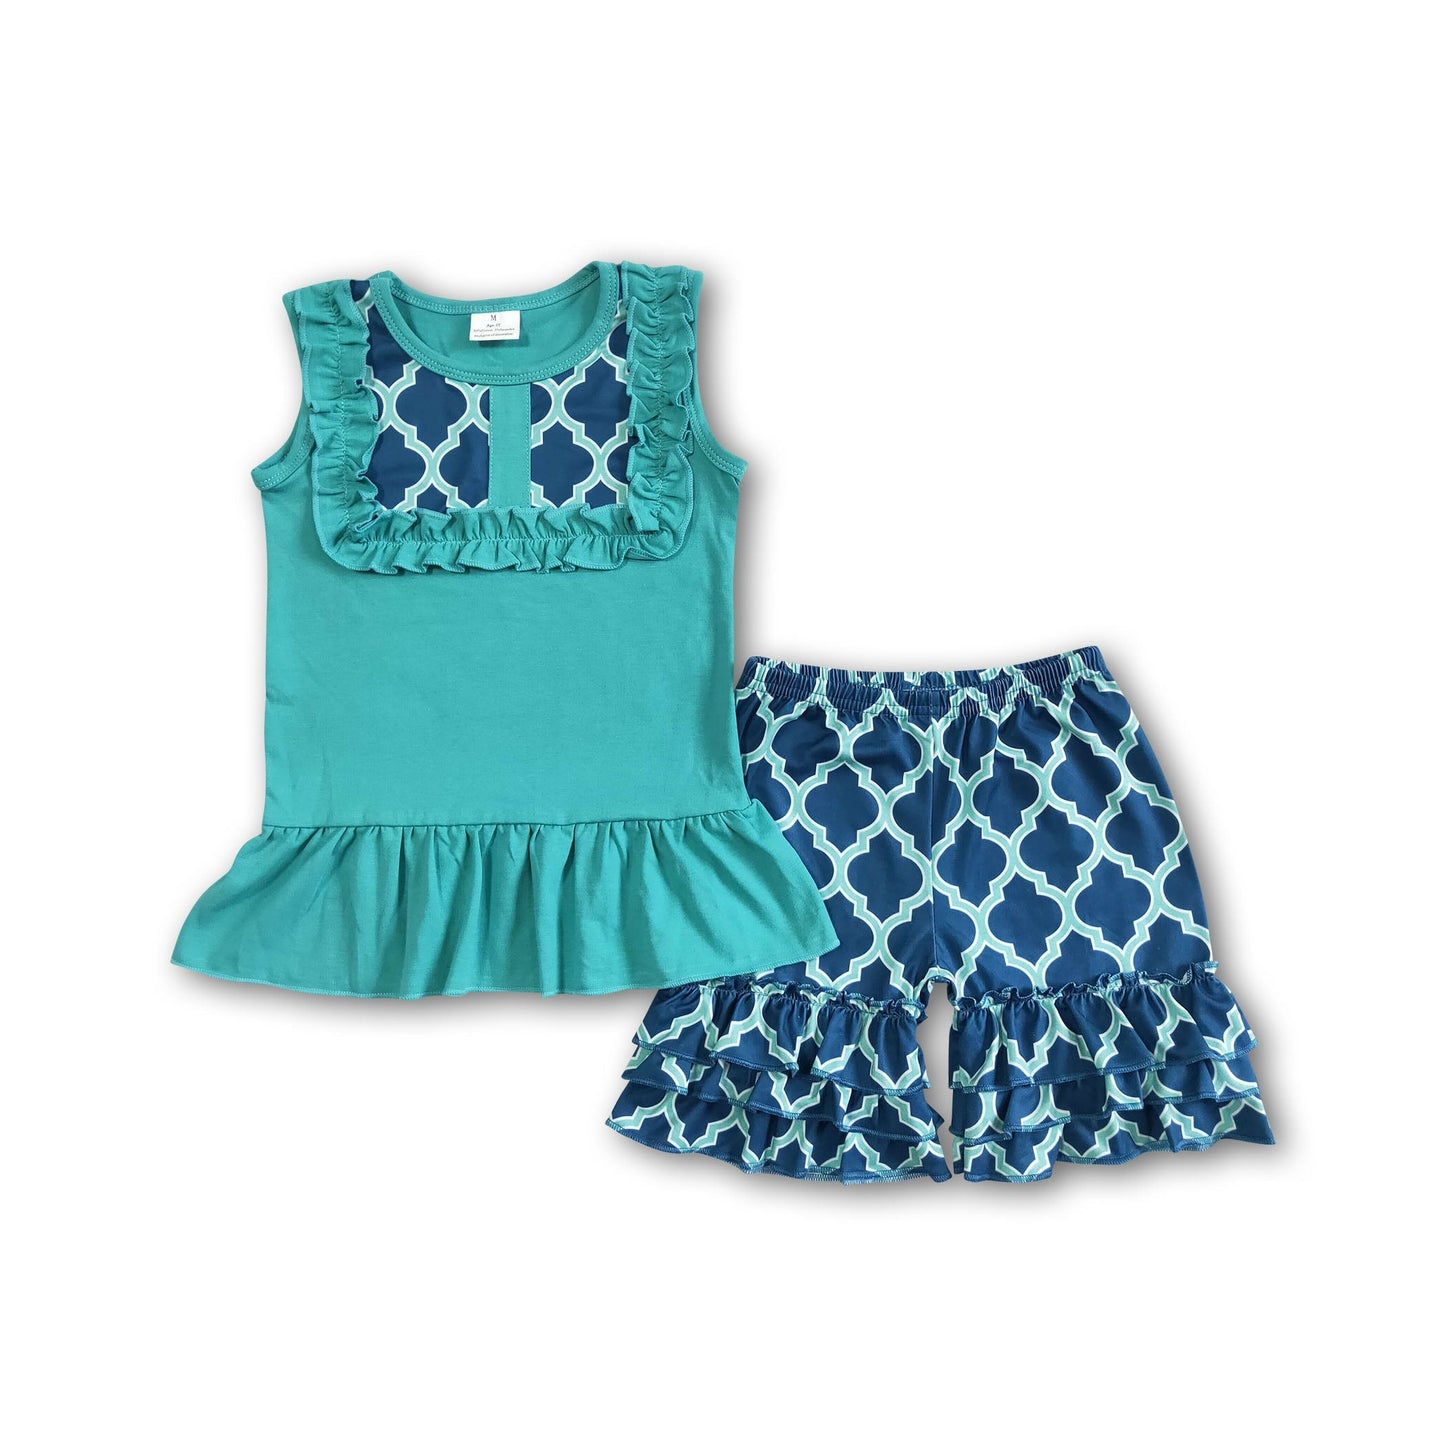 Sleeveless turquoise shirt ruffle shorts girls summer clothing